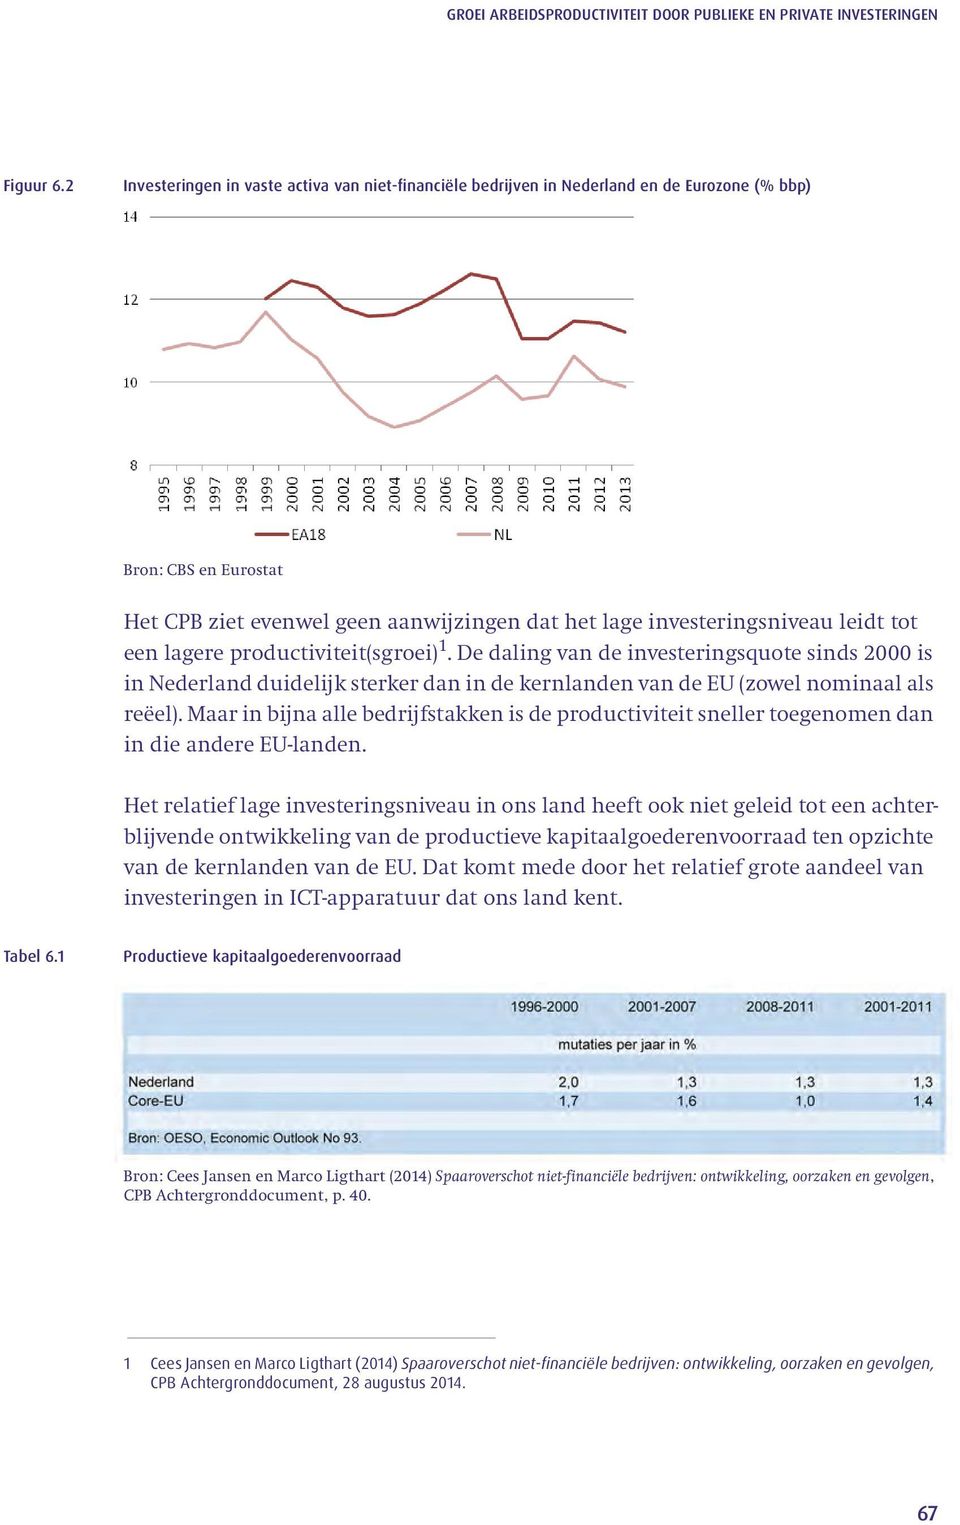 tot een lagere productiviteit(sgroei) 1. De daling van de investeringsquote sinds 2000 is in Nederland duidelijk sterker dan in de kernlanden van de EU (zowel nominaal als reëel).